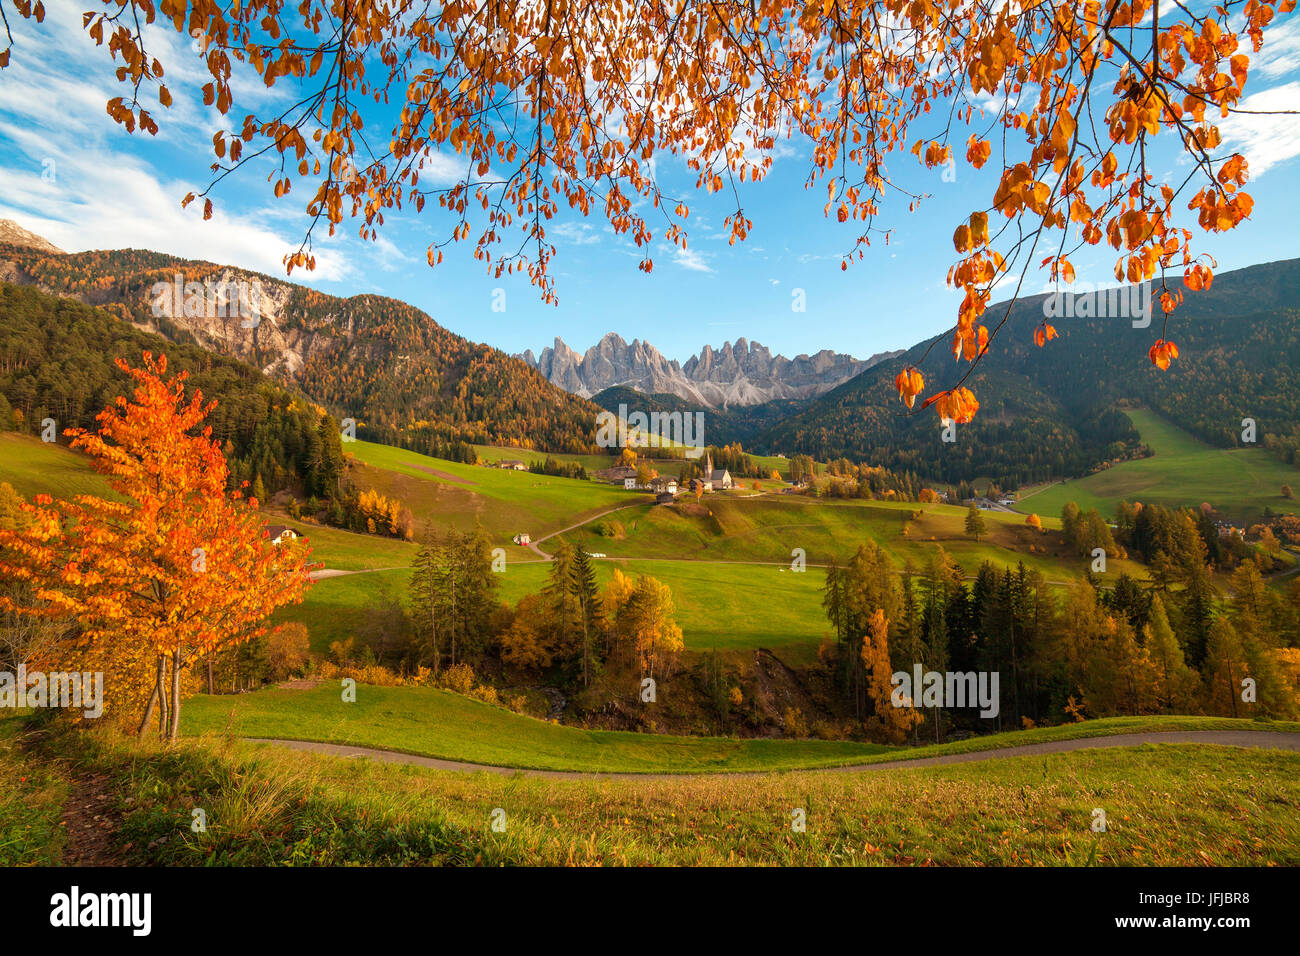 Val di Funes mit der Ortschaft Santa Maddalena, im Hintergrund die Geisler, in diesem Bild natürlich umrahmt von den Farben des Herbstes Blätter, Südtirol, Dolomiten, einen klassischen Blick auf die Dolomiten mit grünem Rasen, Bäume mit hellen Farben und azurblauen Himmel, Stockfoto